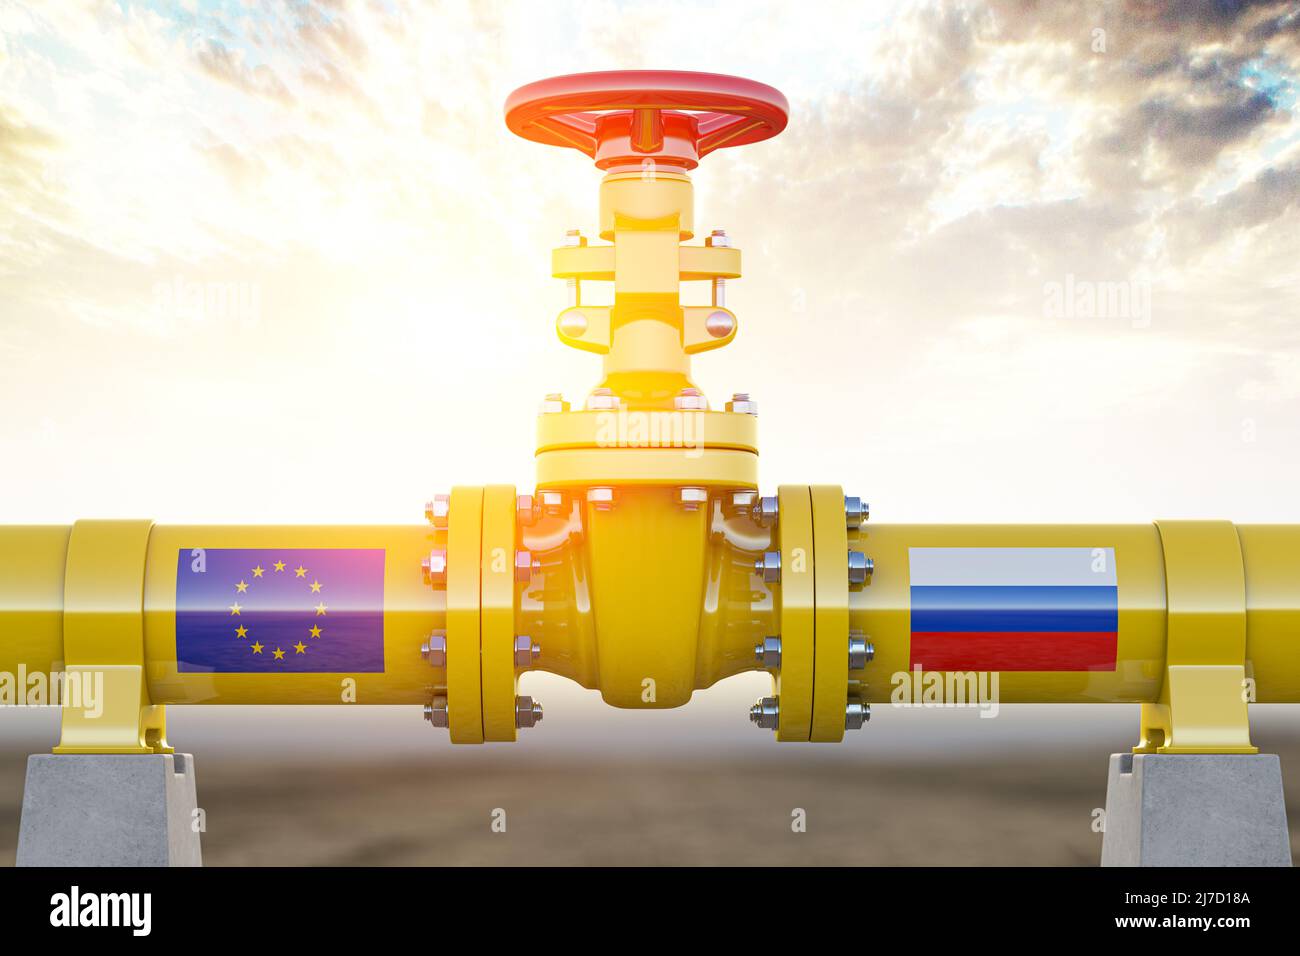 Valvola per oleodotti o gasdotti Unione europea e Russia. Critico energetico del petrolio e del gas. 3d illustrazione Foto Stock